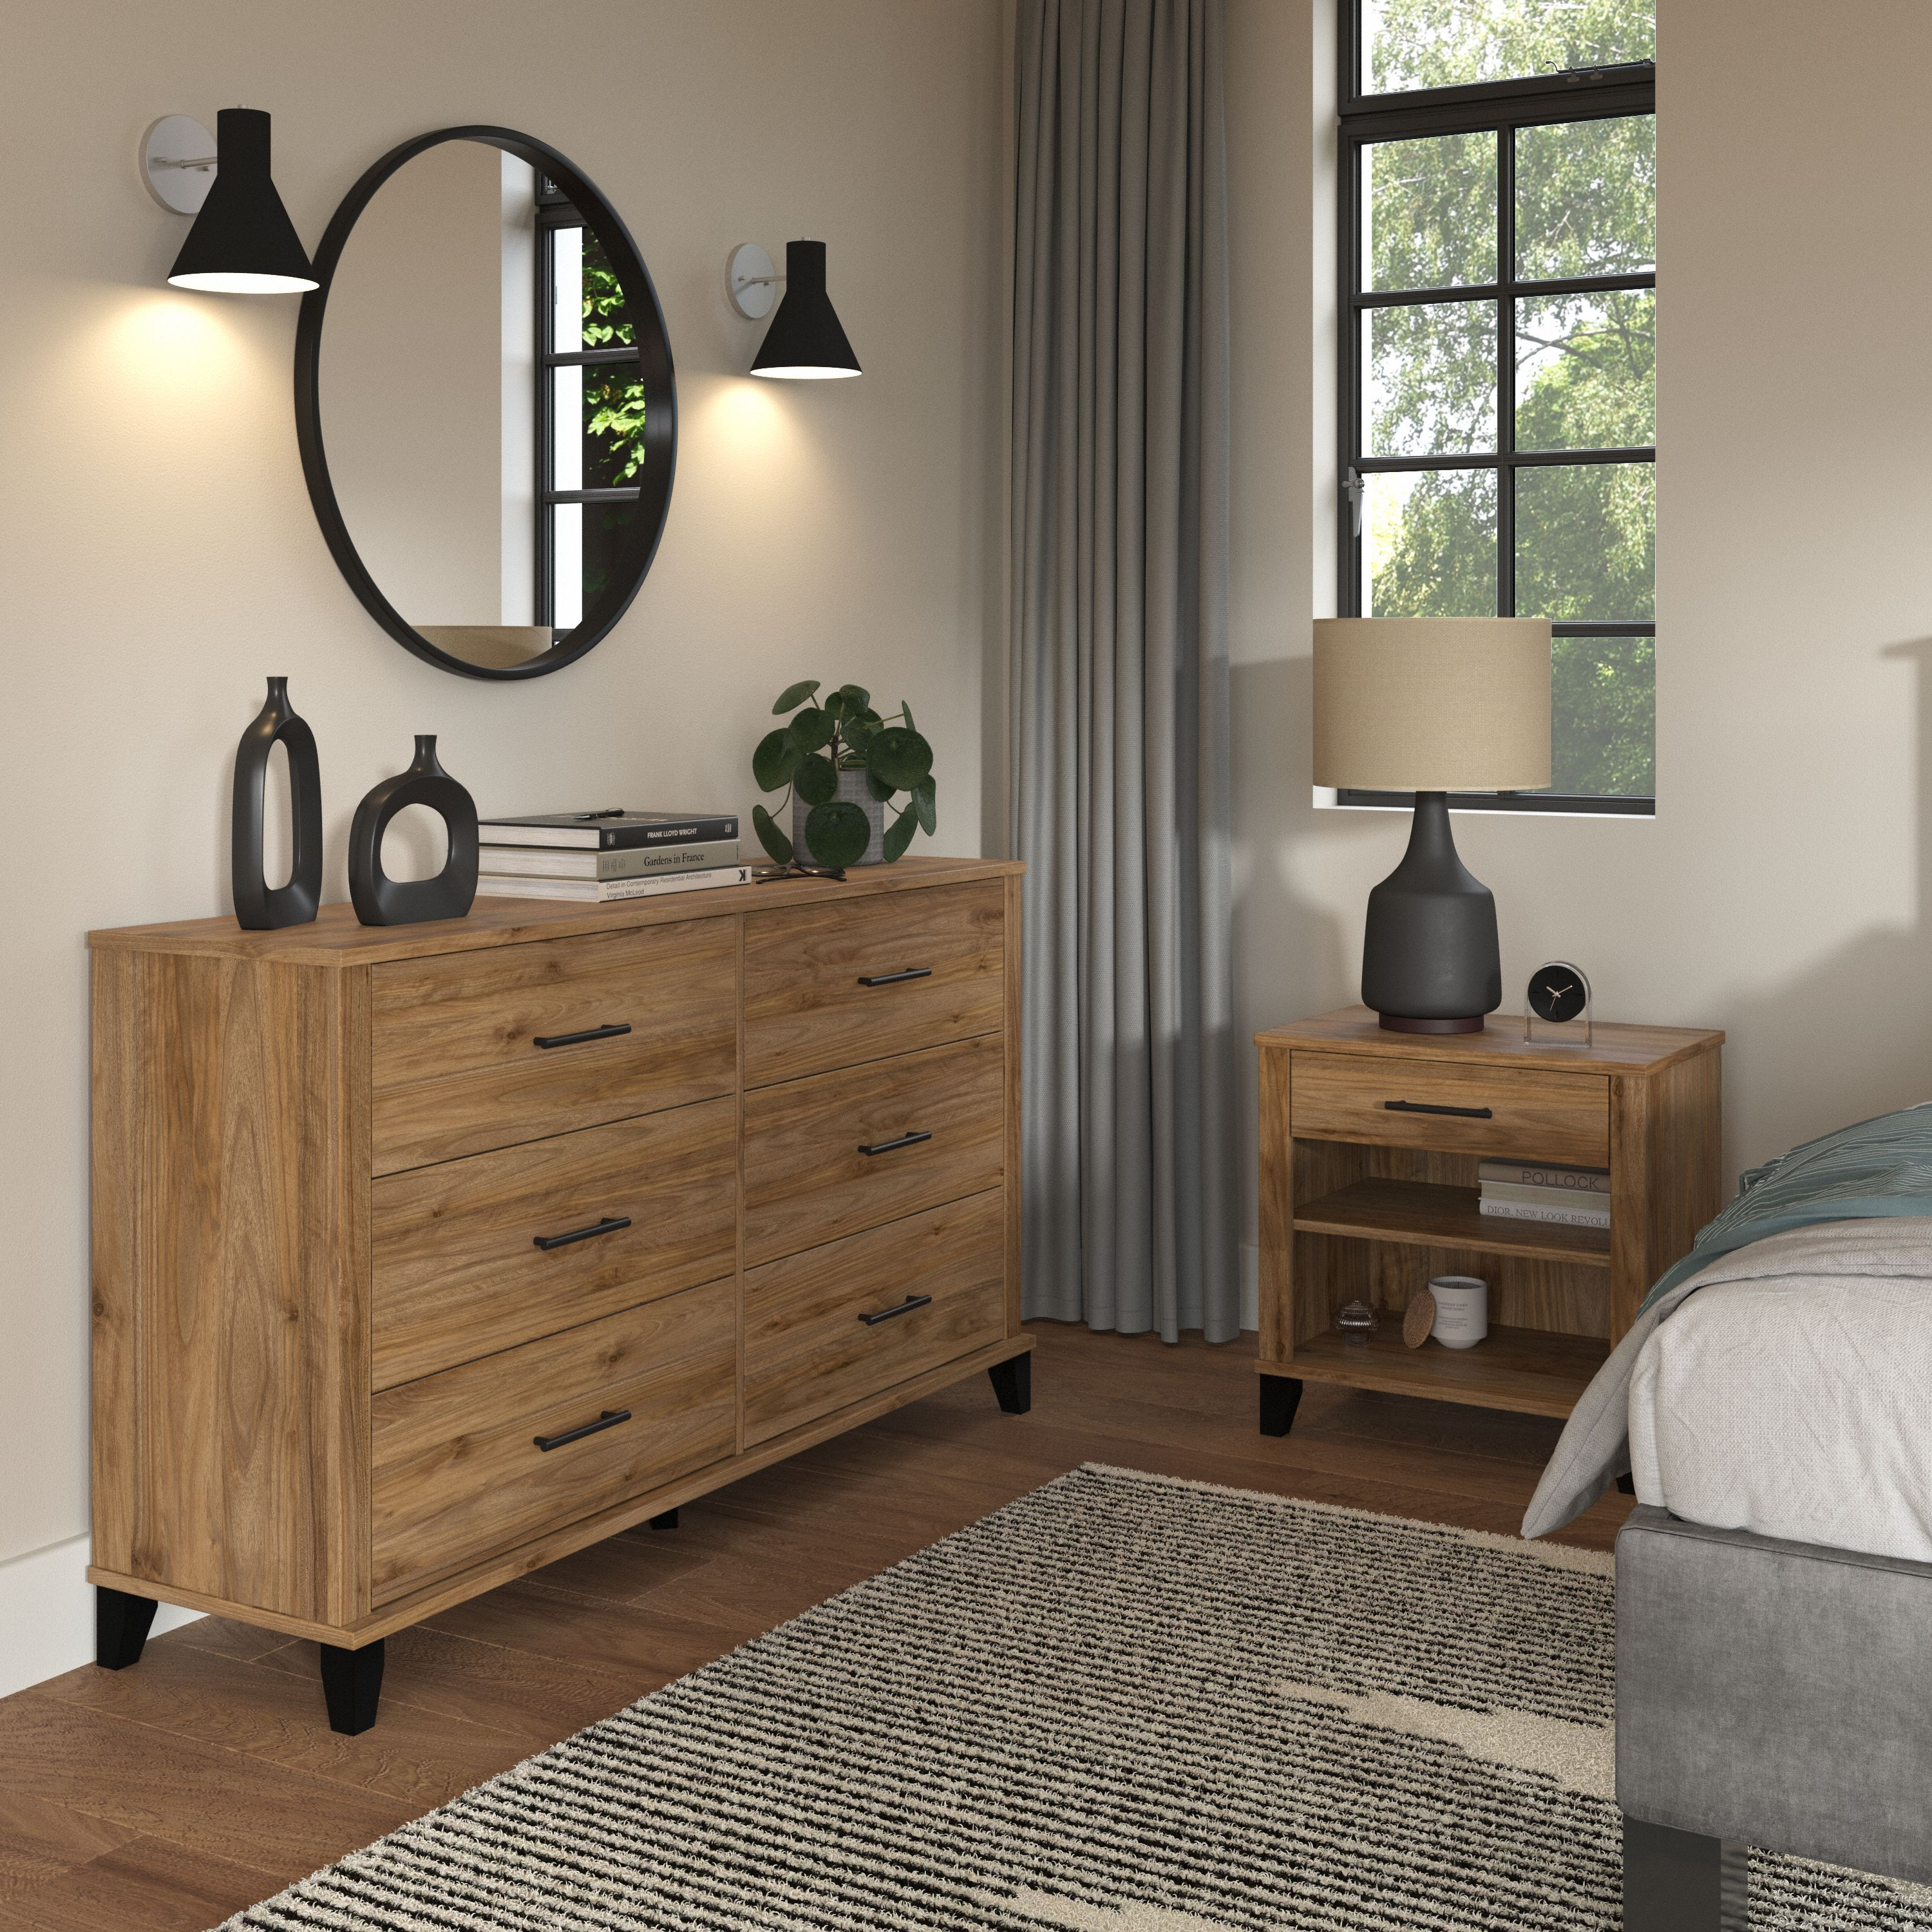 Shop Bush Furniture Somerset 6 Drawer Dresser and Nightstand Set 01 SET035FW #color_fresh walnut